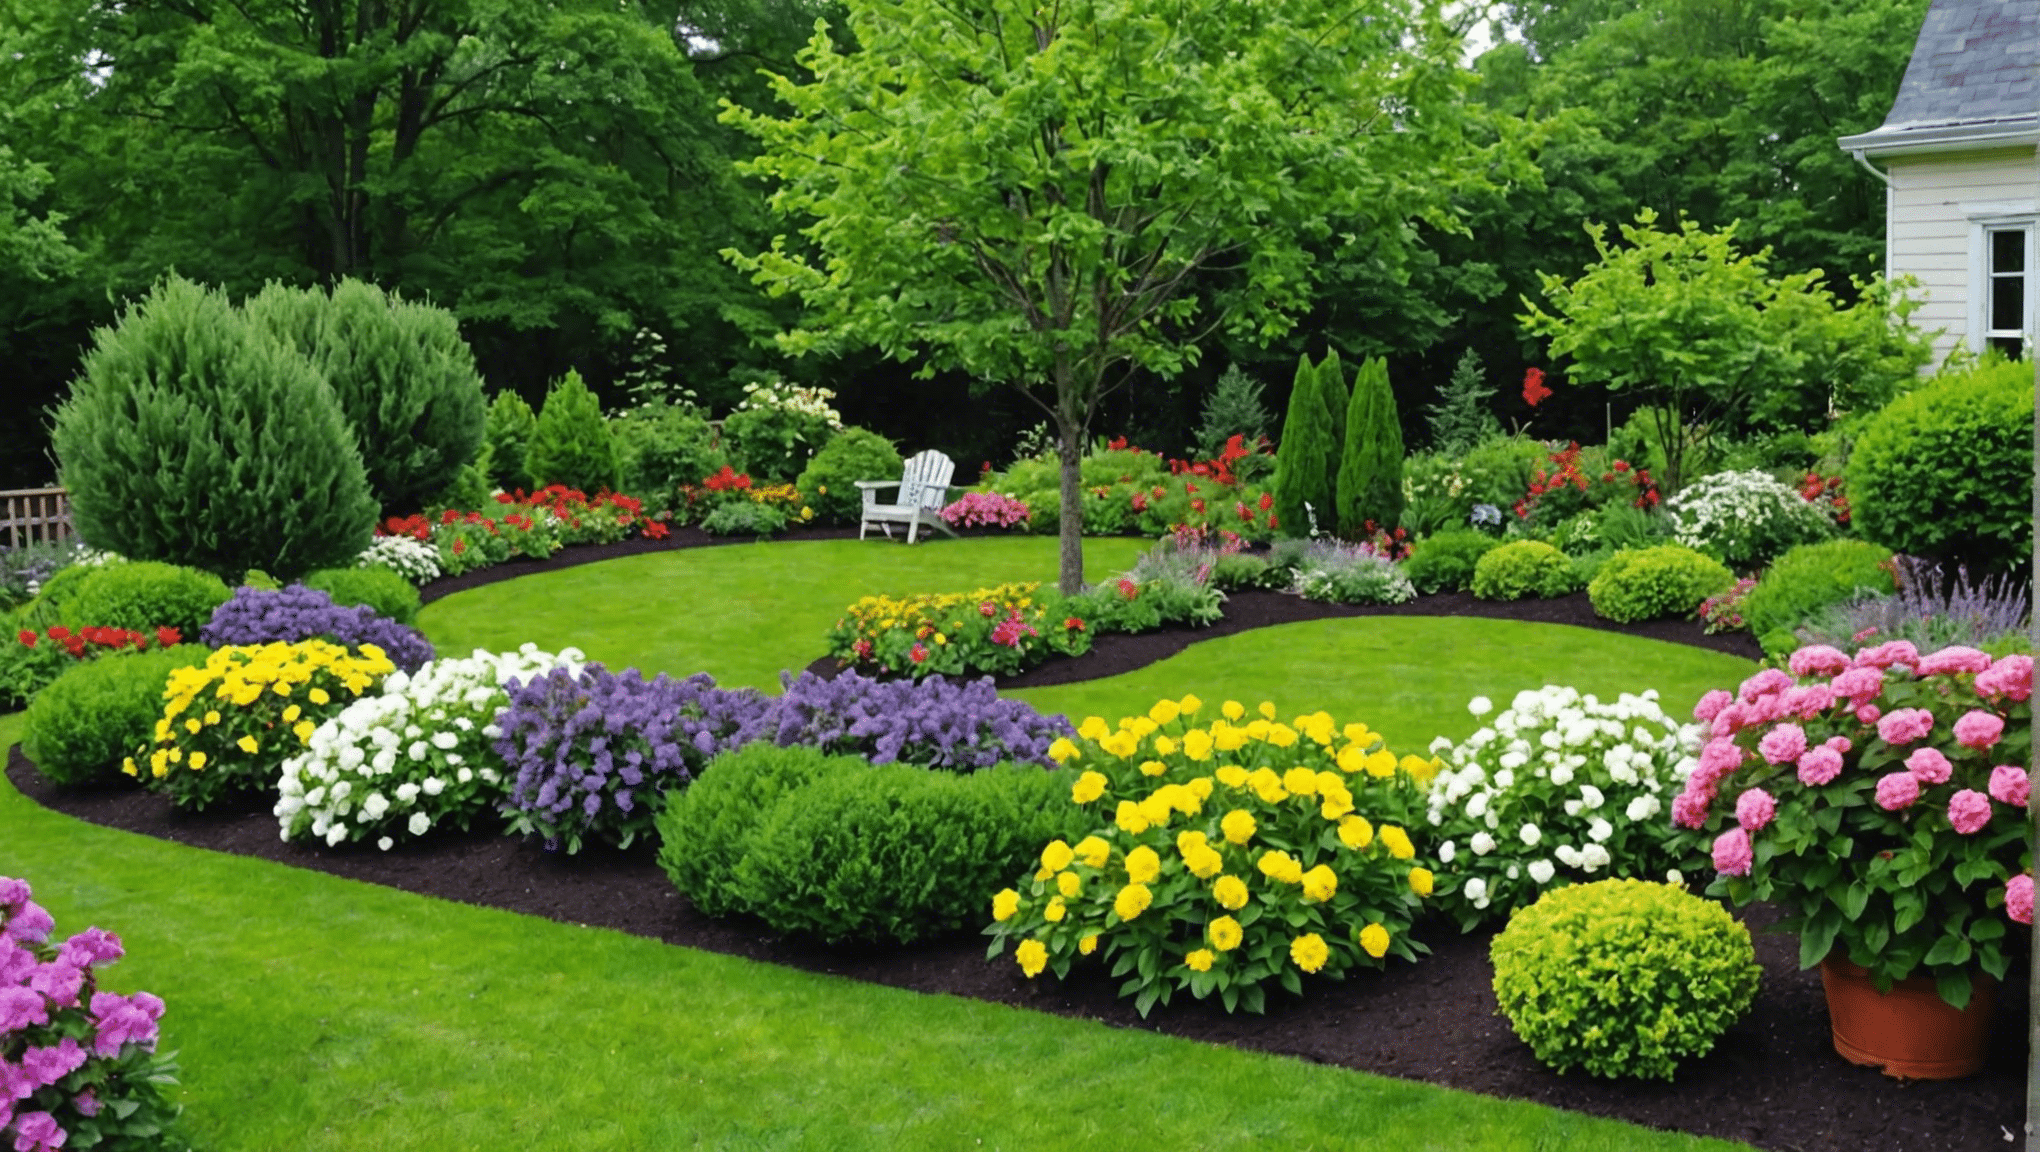 objevte úžasné zahradnické triky a nápady, jak pozvednout vaši zahradnickou hru. připravte se na přeměnu vašeho zeleného prostoru pomocí těchto nejlepších tipů a triků.